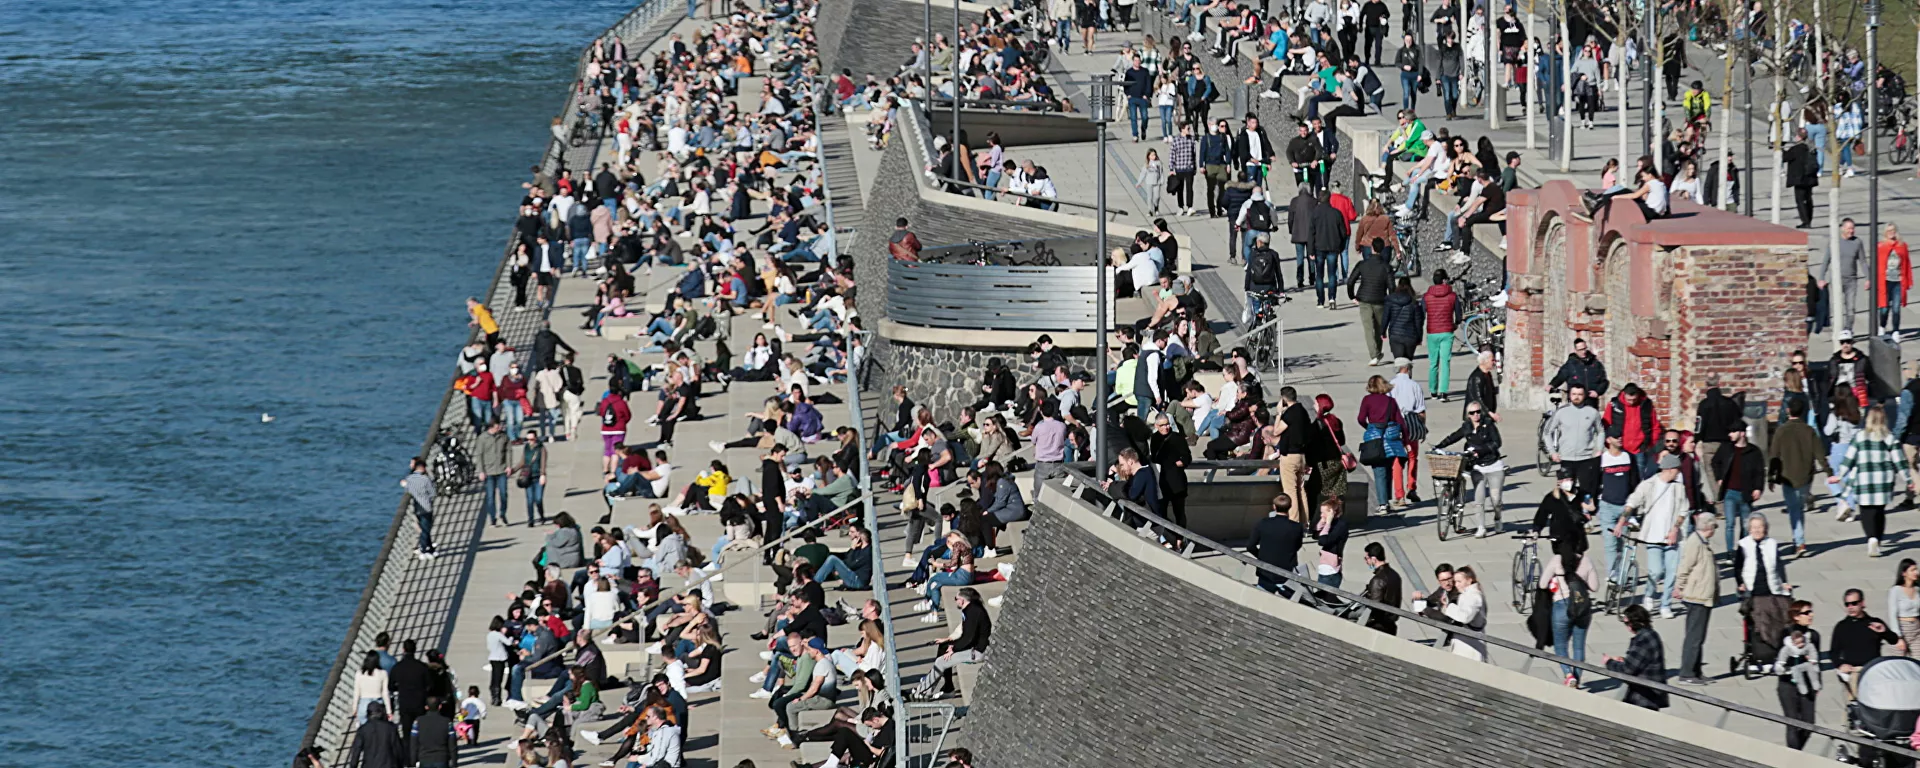 يقضي الناس وقتًا تحت أشعة الشمس على ضفاف نهر الراين وسط جائحة كورونا (كوفيد-19) في مدينة كولونيا في ألمانيا، 21 فبراير 2021. - سبوتنيك عربي, 1920, 25.05.2021